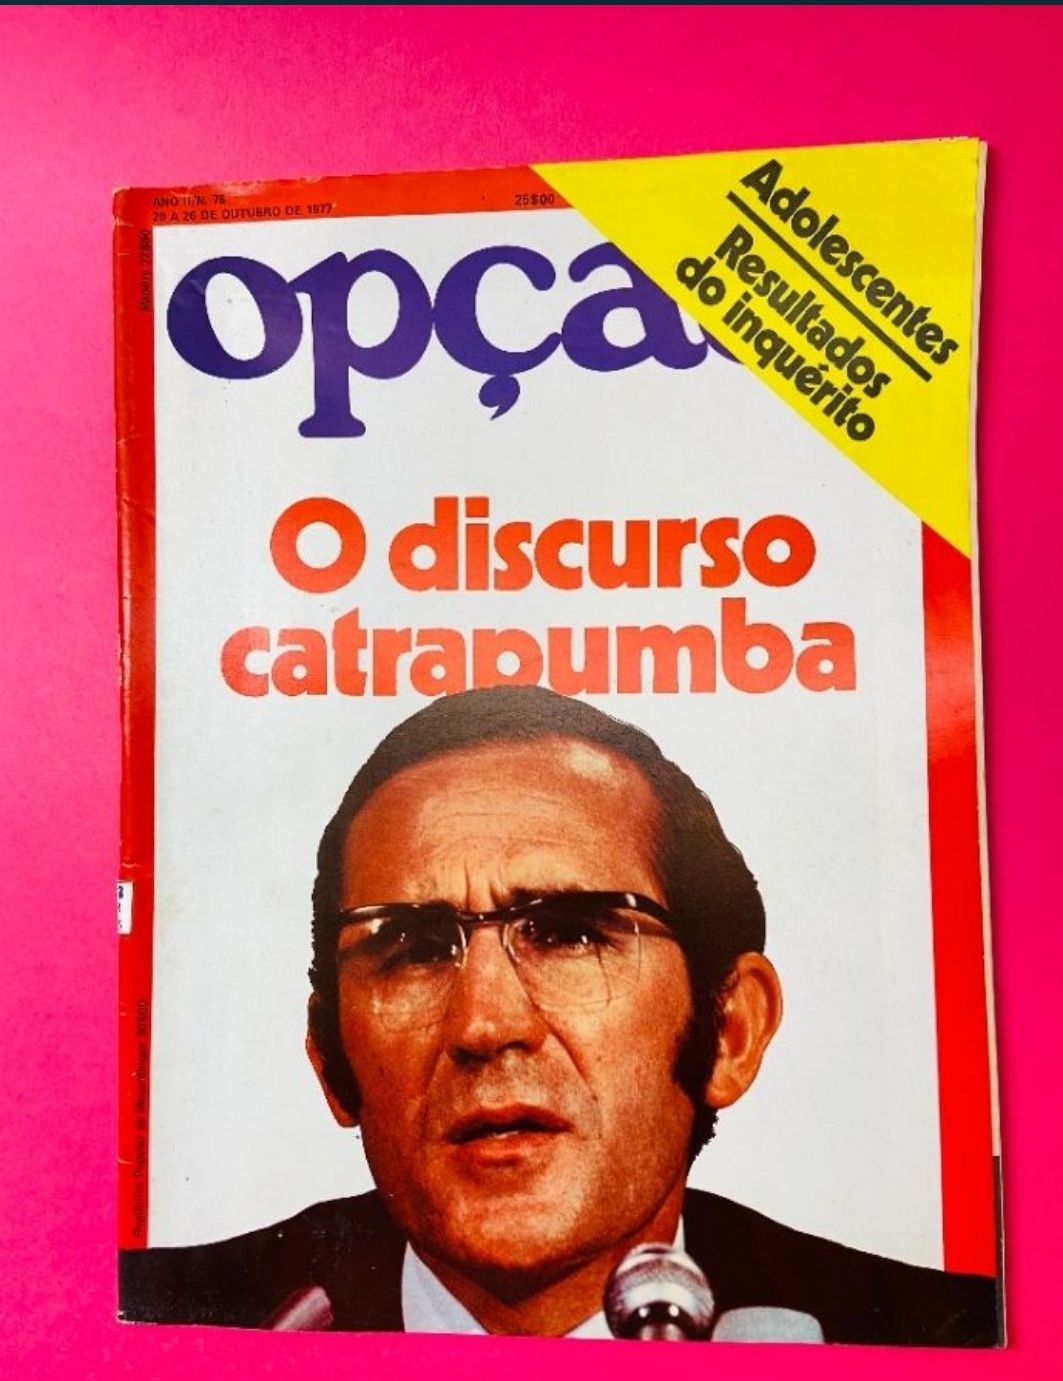 Revistas da colecção Opção. Anos 70